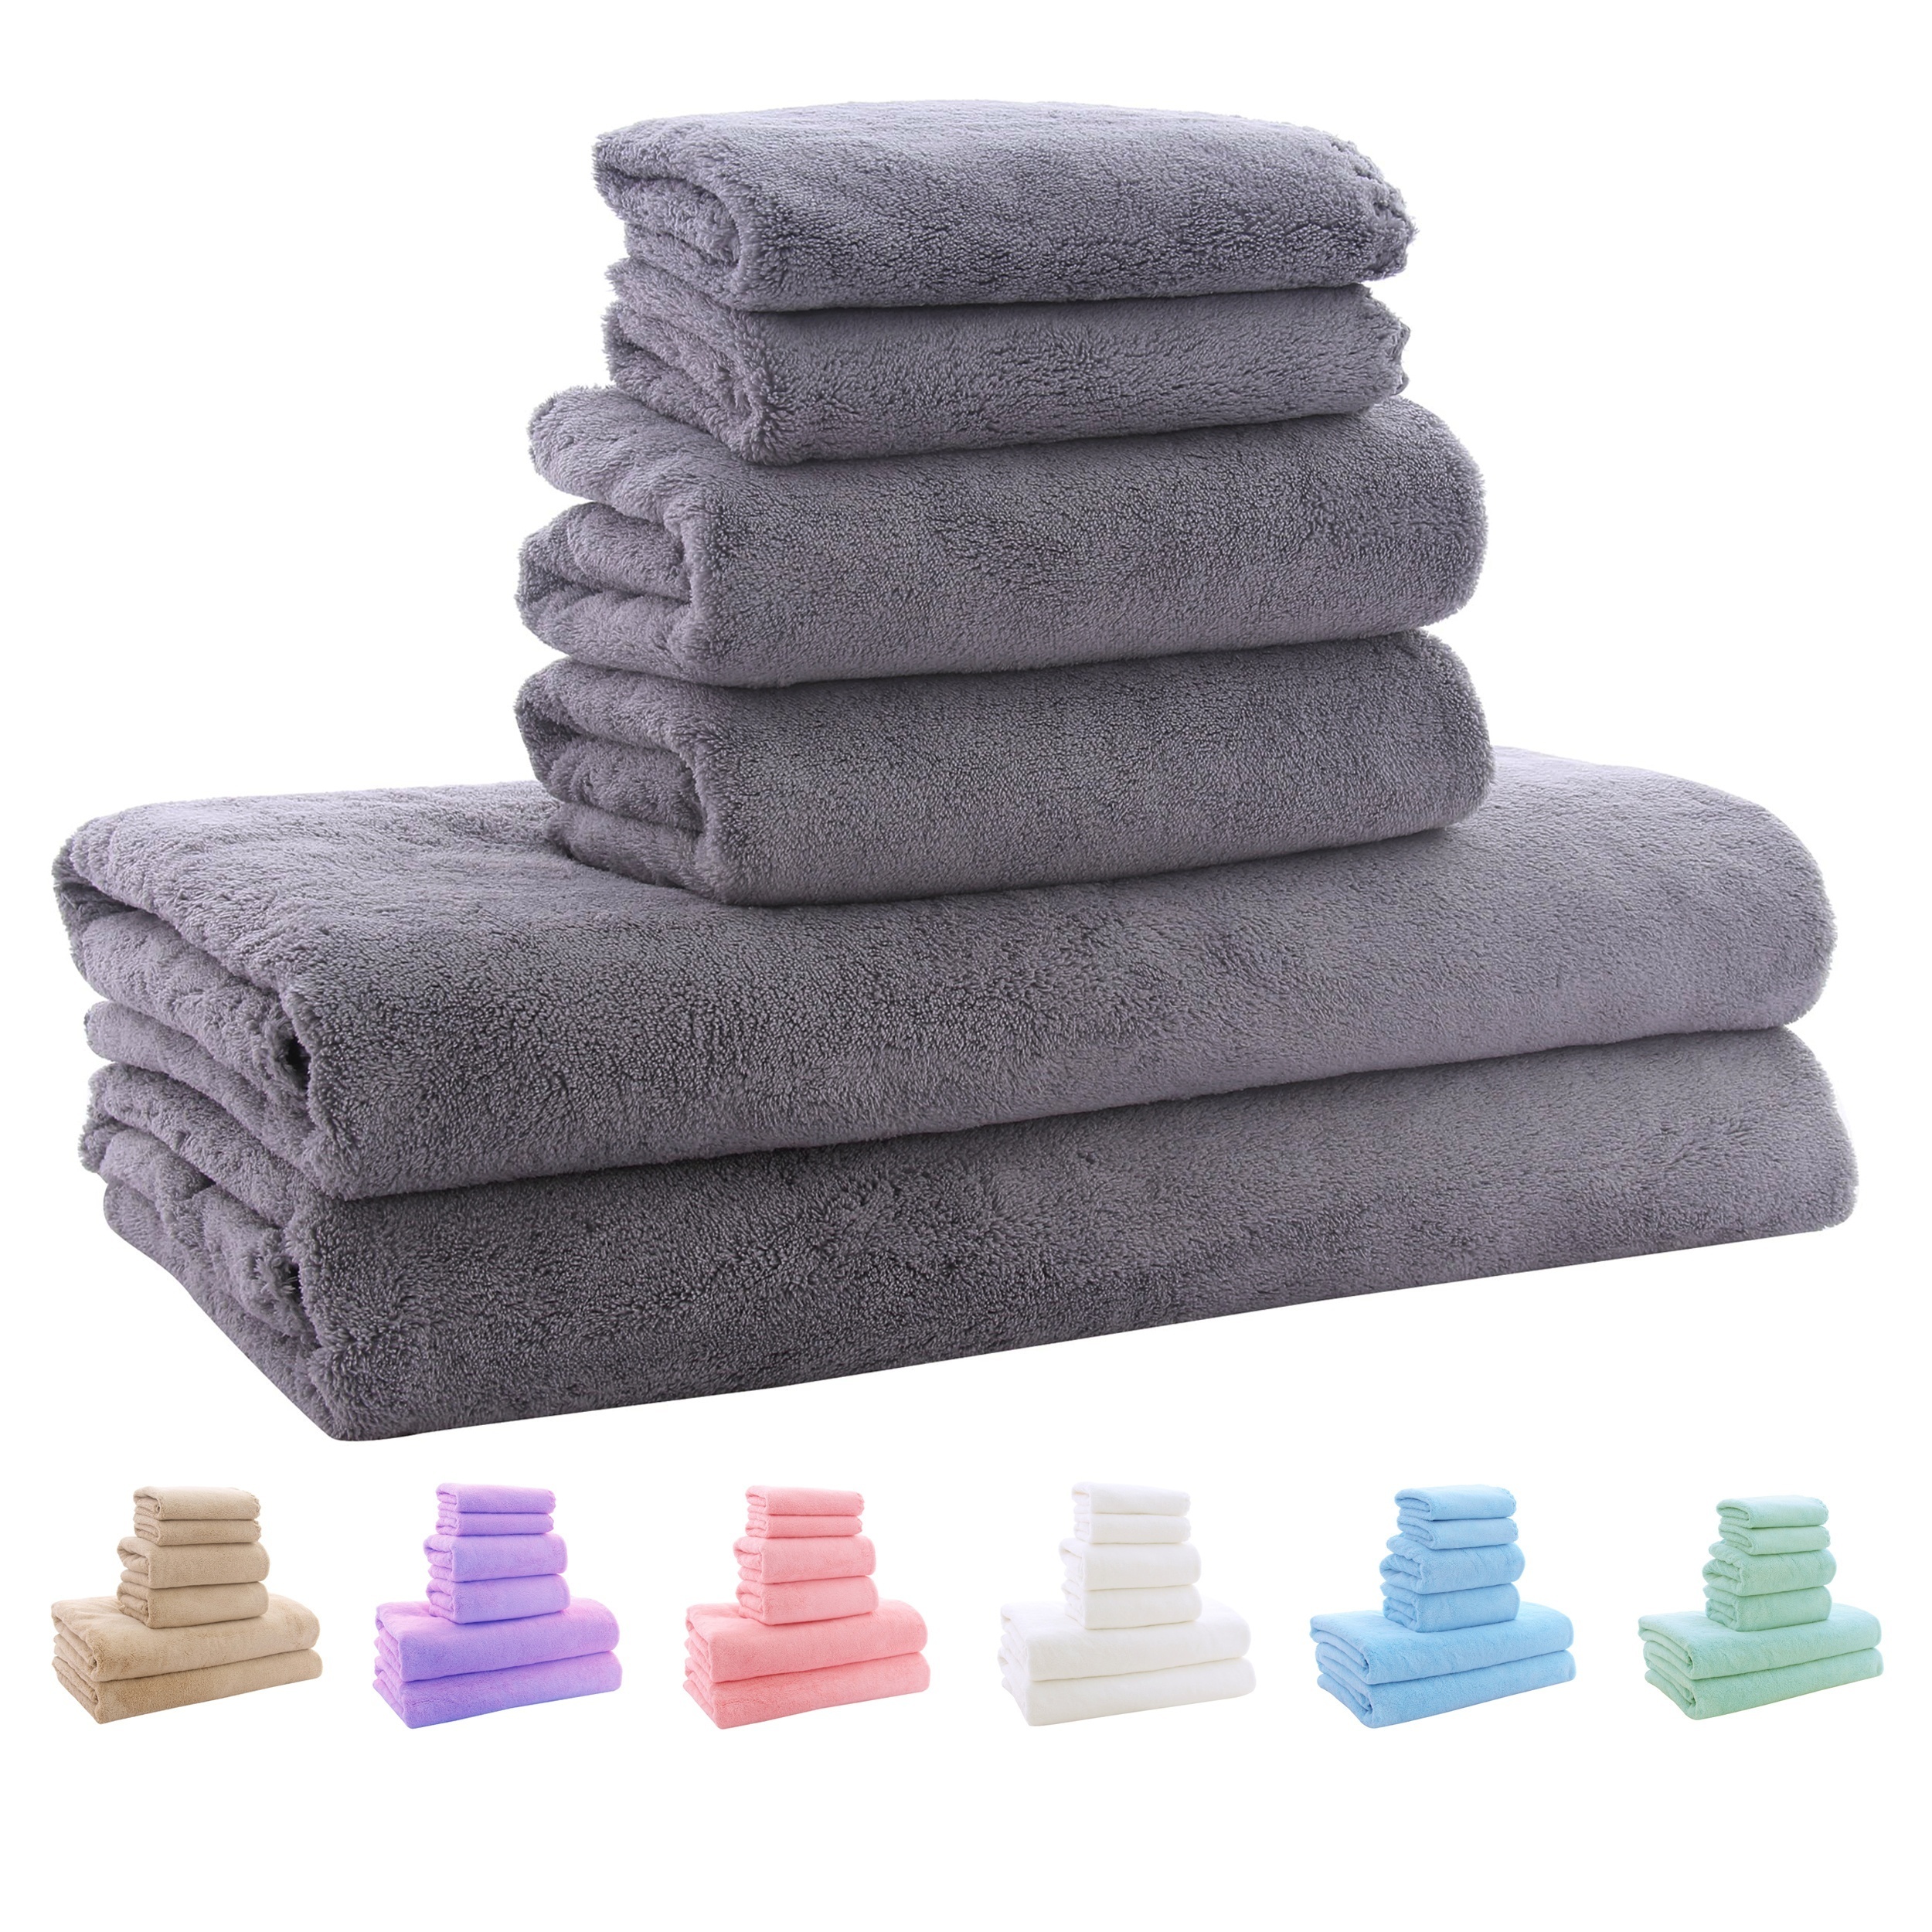 MyPillow: 6-Piece Bath Towel Special